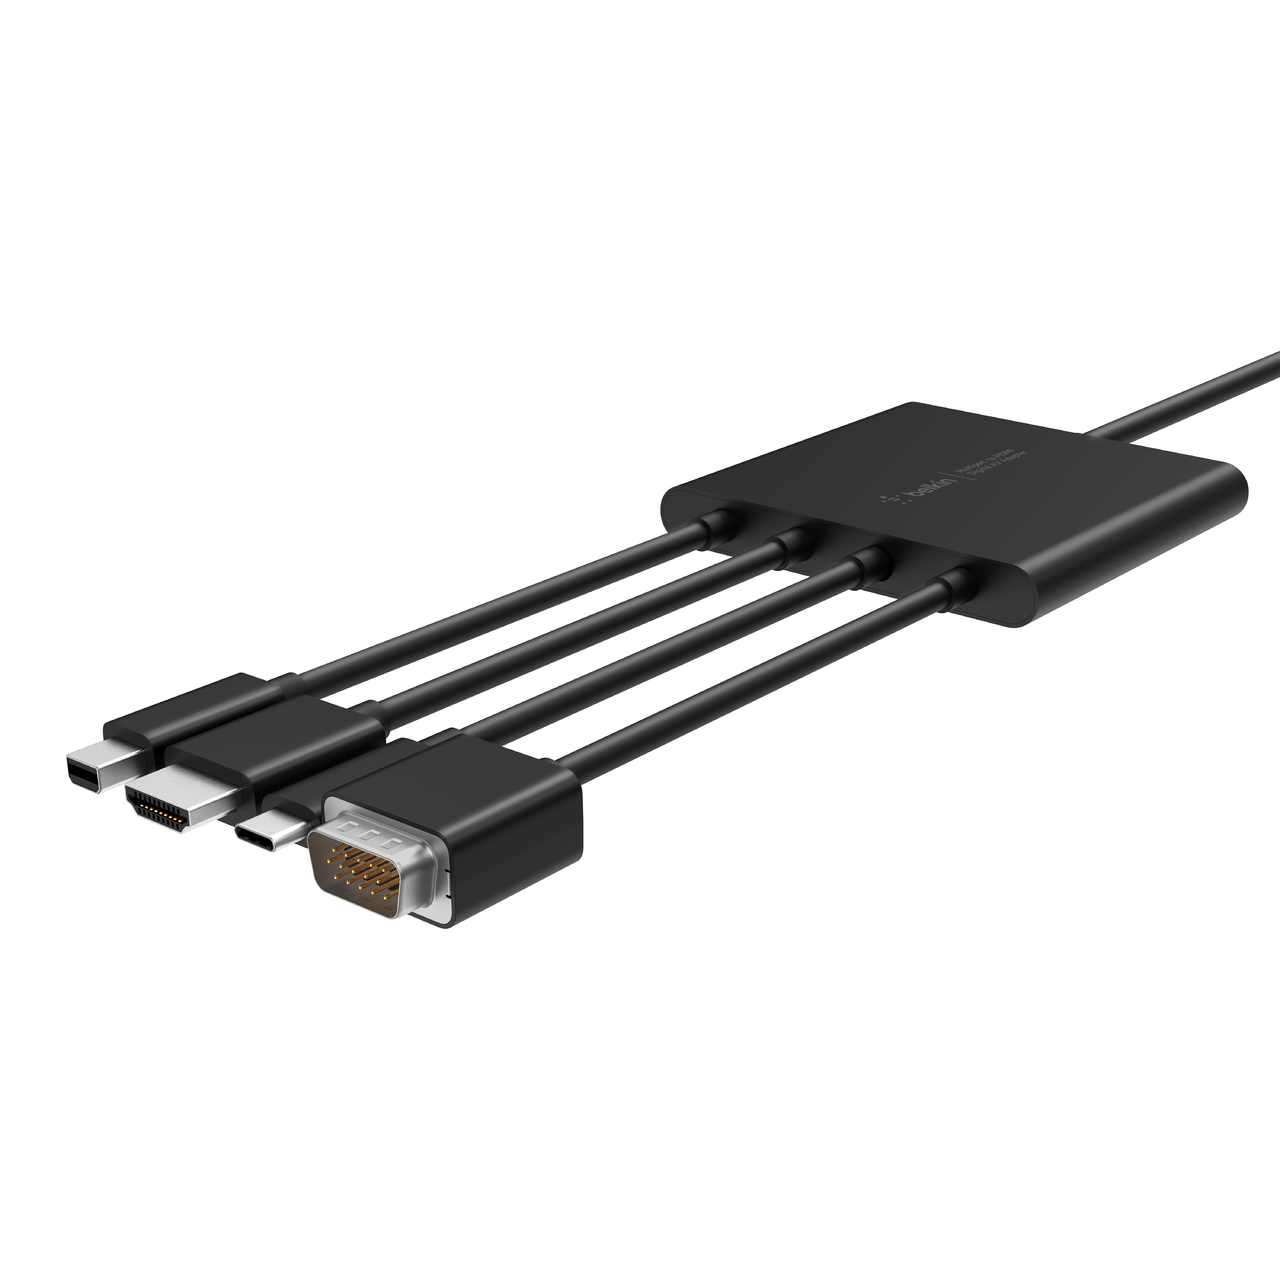 Multiport to HDMI Digital AV Adapter | Belkin